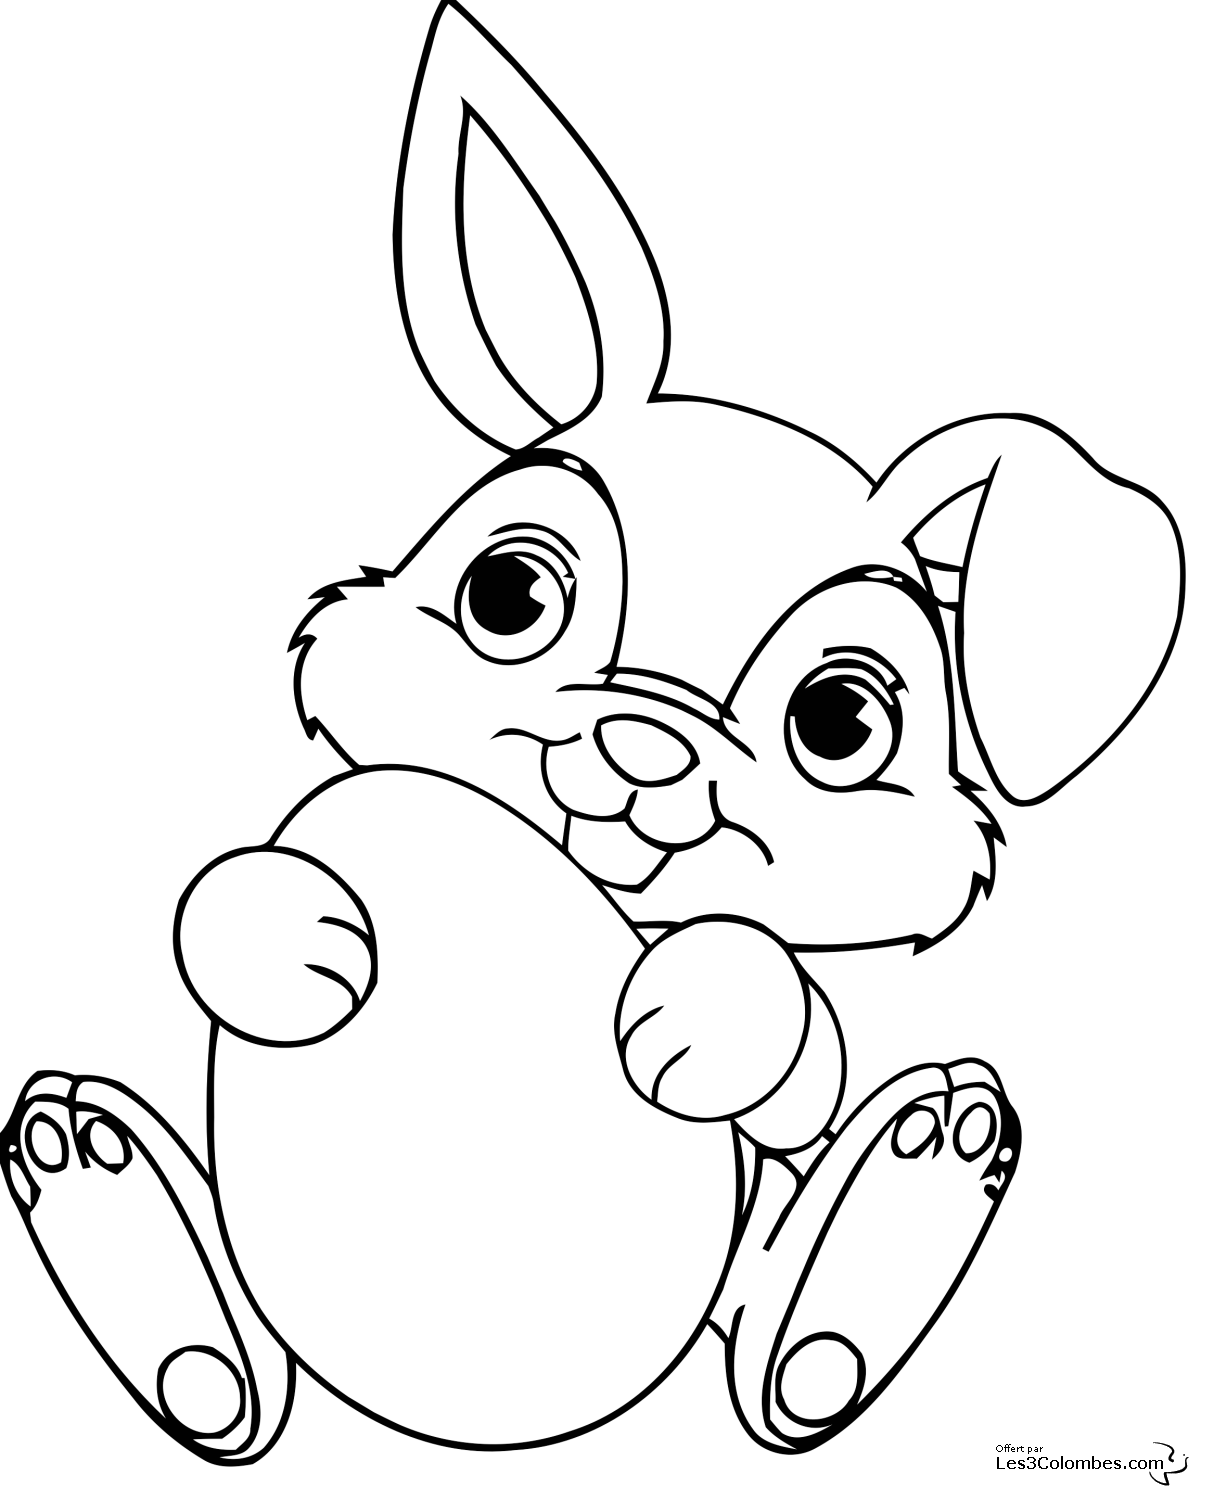 Раскраска Пасха кролик